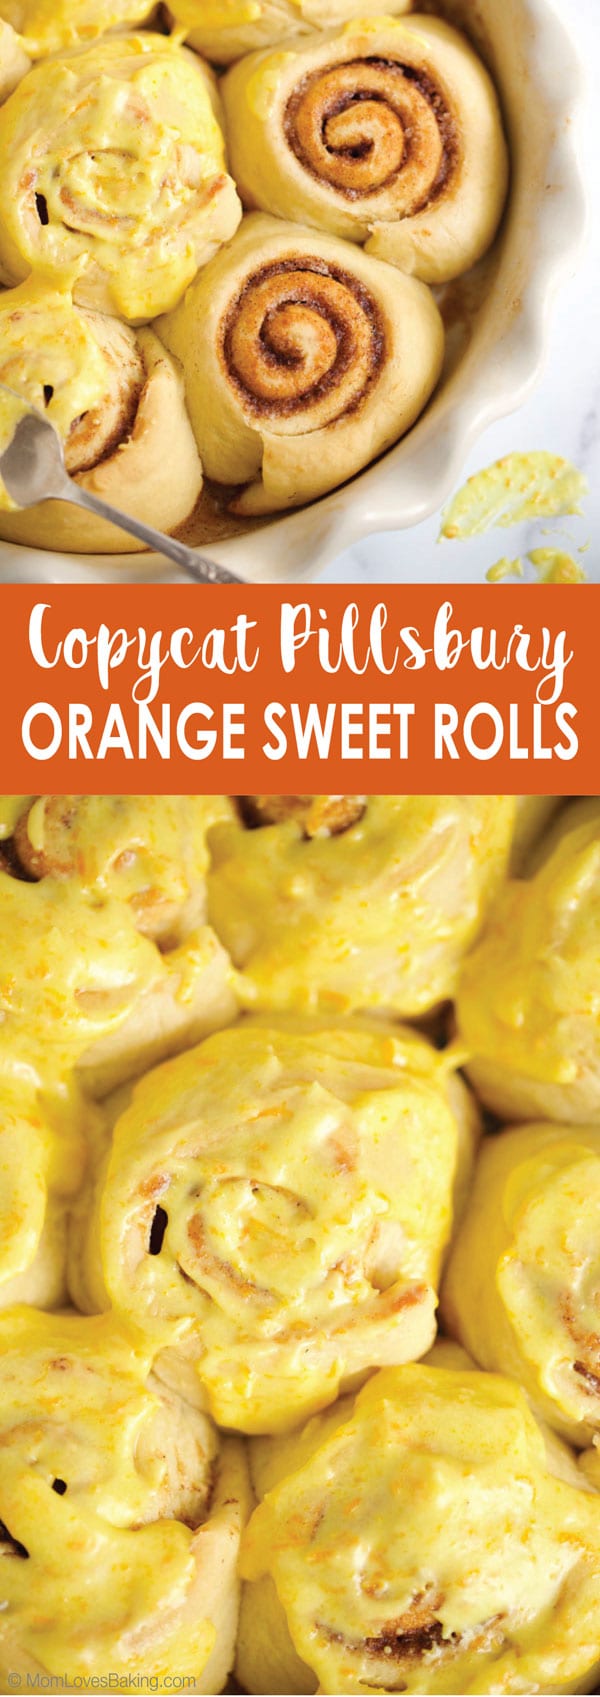 Copycat Pillsbury Orange Sweet Rolls